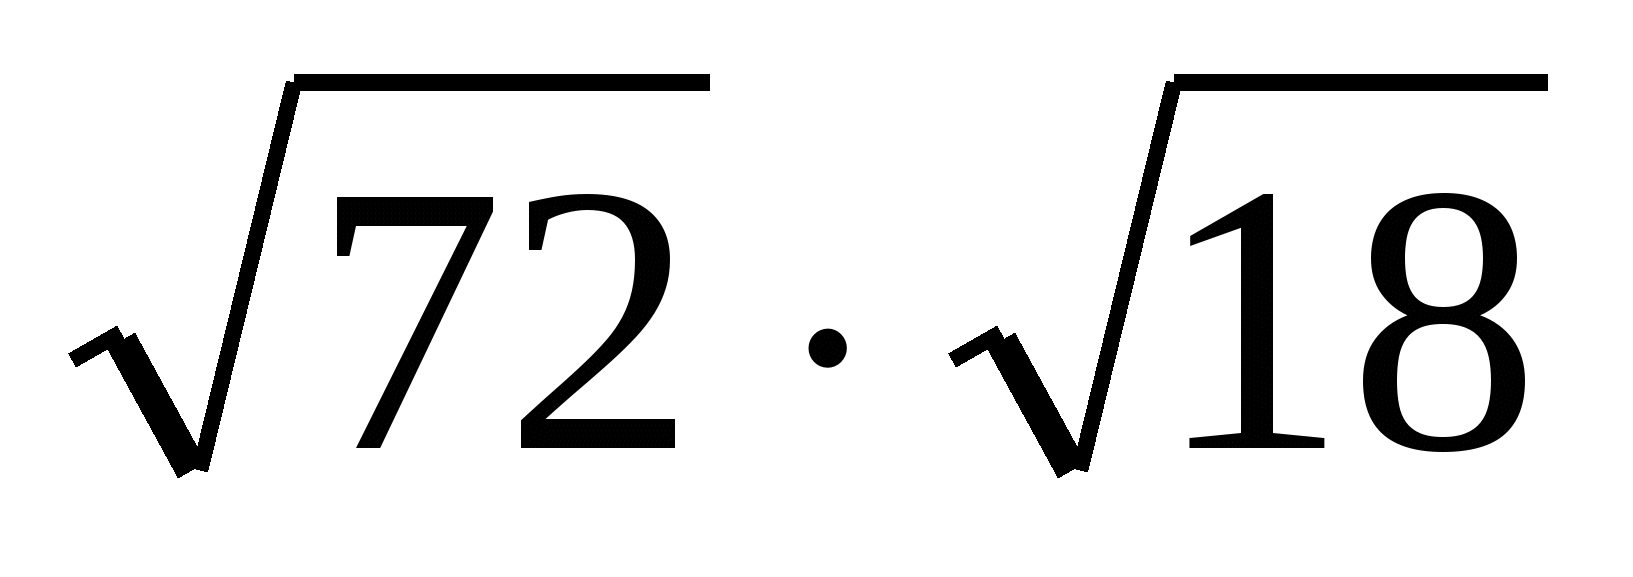 Корень 8 22. Арифметический квадратный корень 8 класс самостоятельная работа. Контрольная работа Арифметический квадратный корень 8 класс. Арифметический квадратный корень на черном фоне.